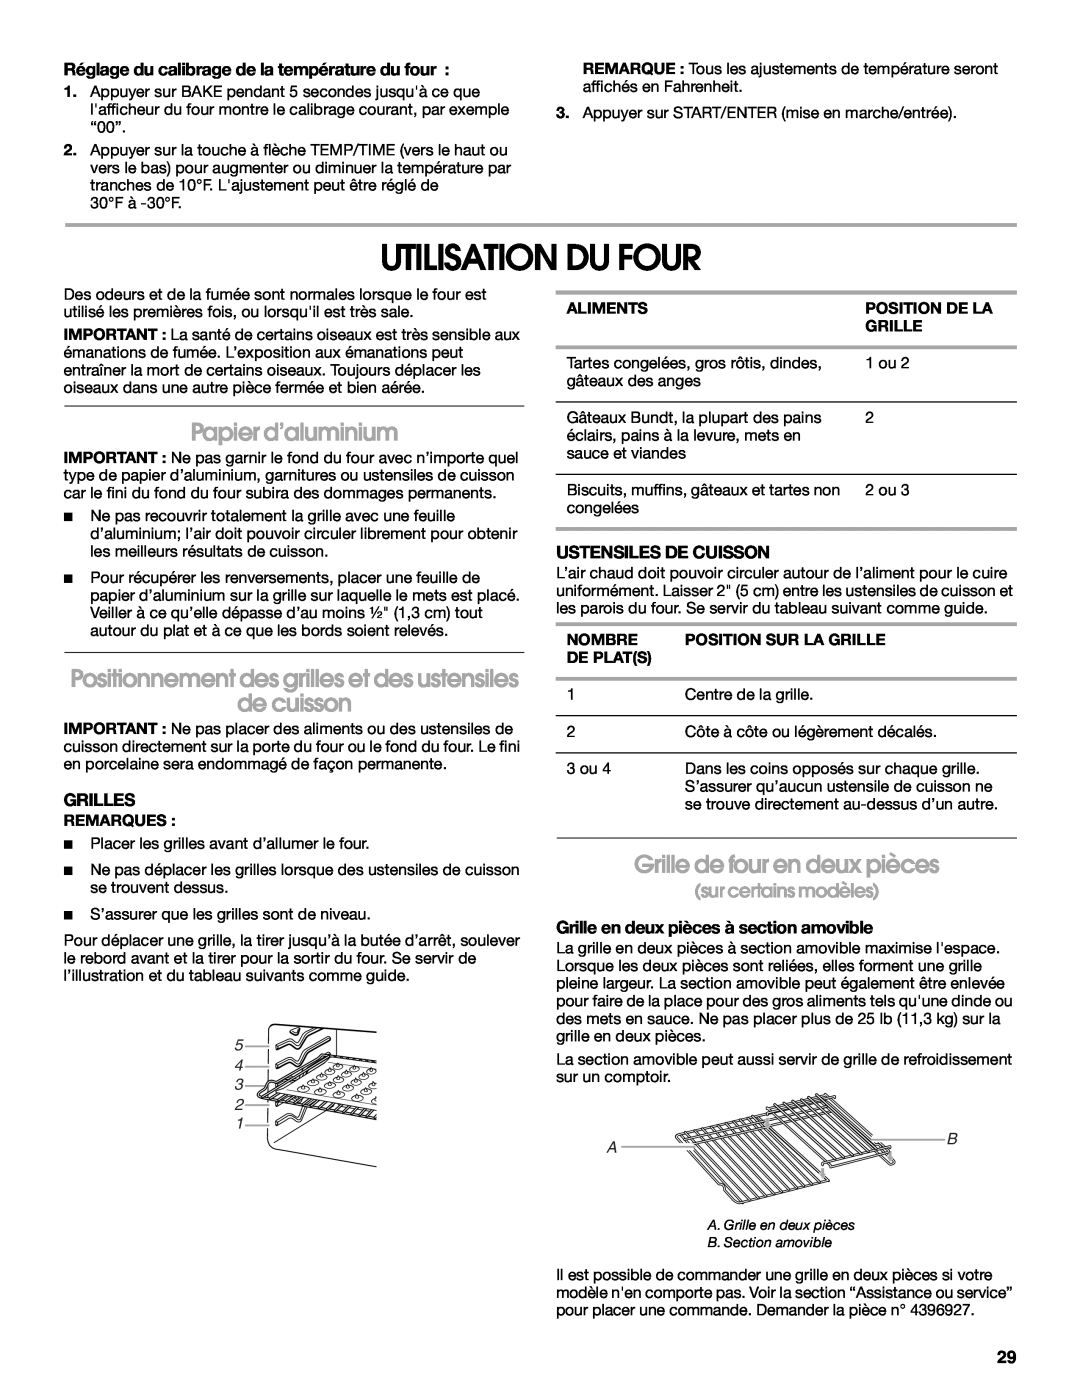 Whirlpool YIES366RS1 manual Utilisation Du Four, Papier d’aluminium, de cuisson, Grille de four en deux pièces, Grilles 